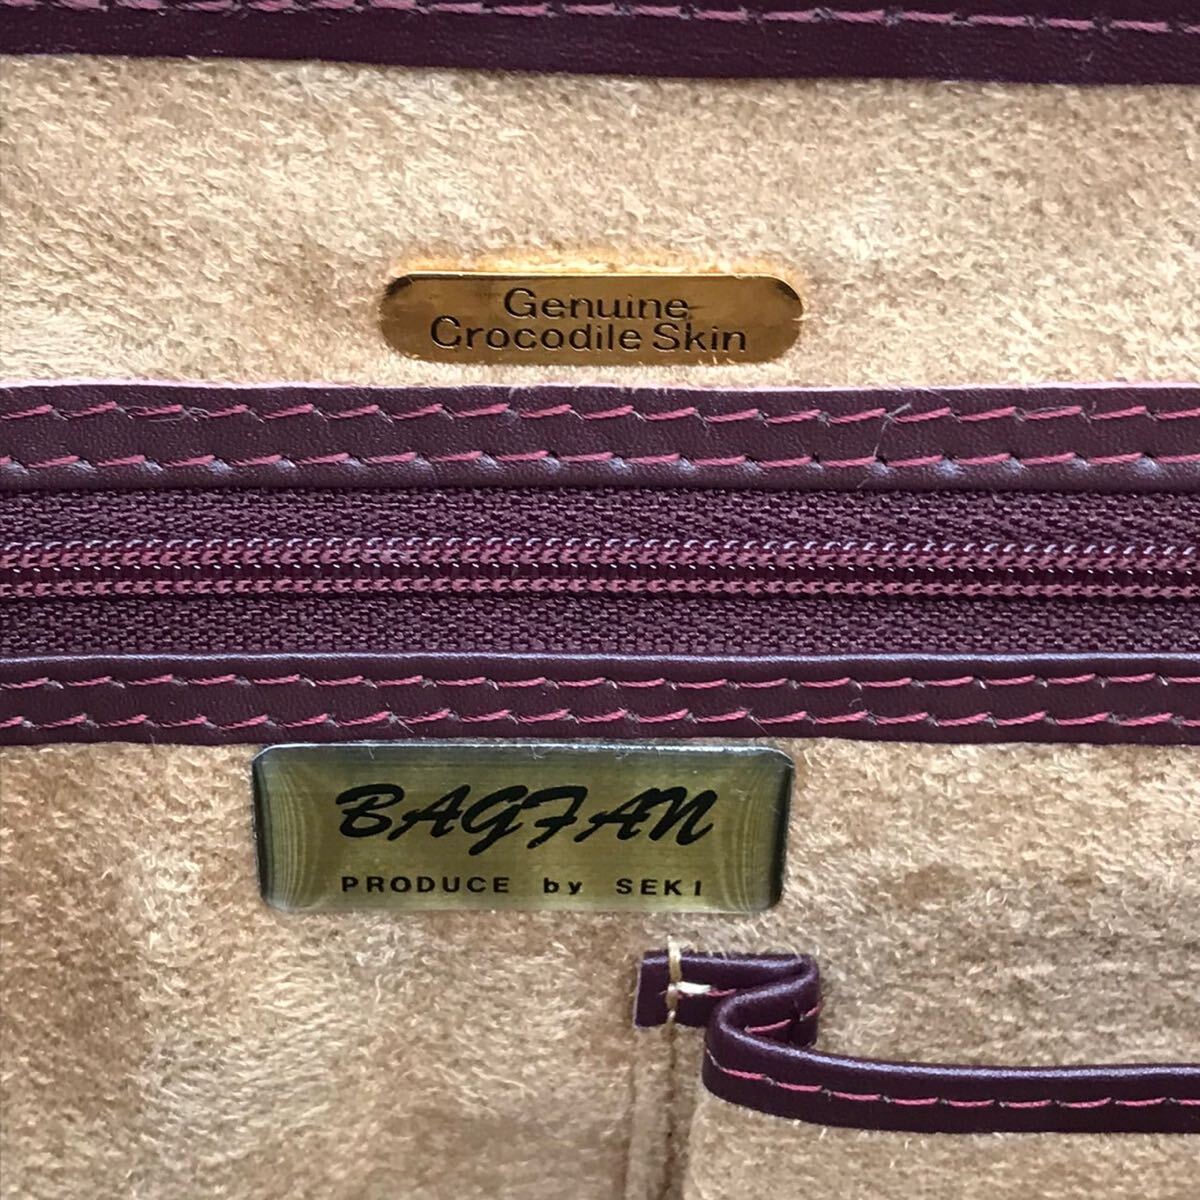 BAGFAN produce by seki ワニ革 天然革 シャイニングクロコダイル エキゾチックレザー ハンドバッグ ワンハンドル スウェード ボルドー系